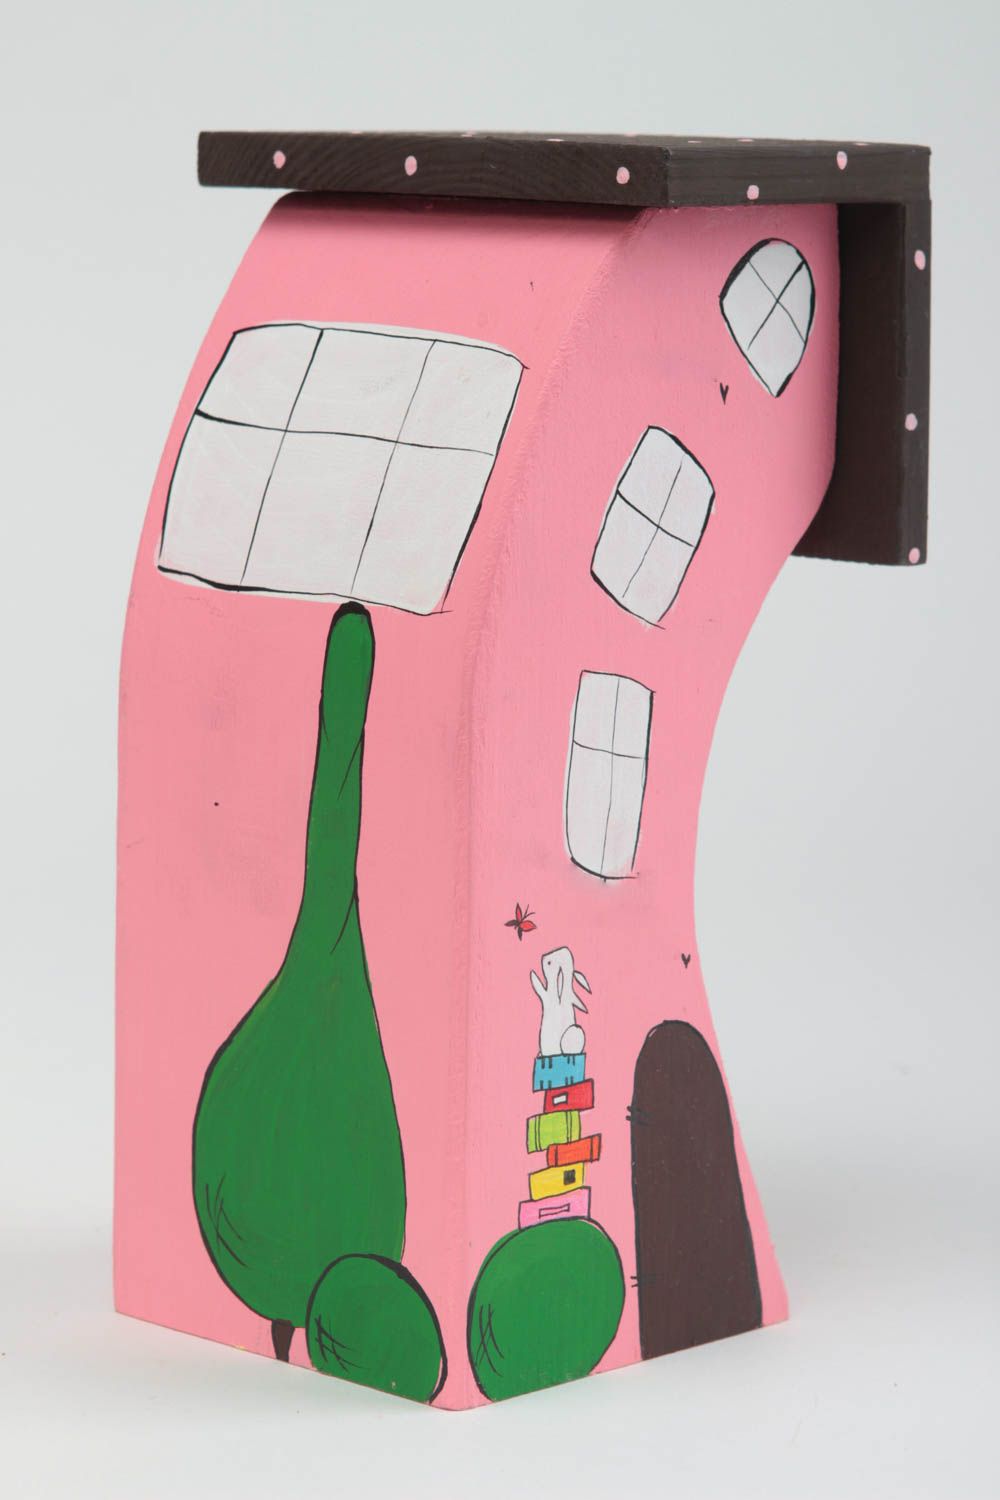 Розовый домик для декора дома ручной работы из дерева расписанный красками фото 2